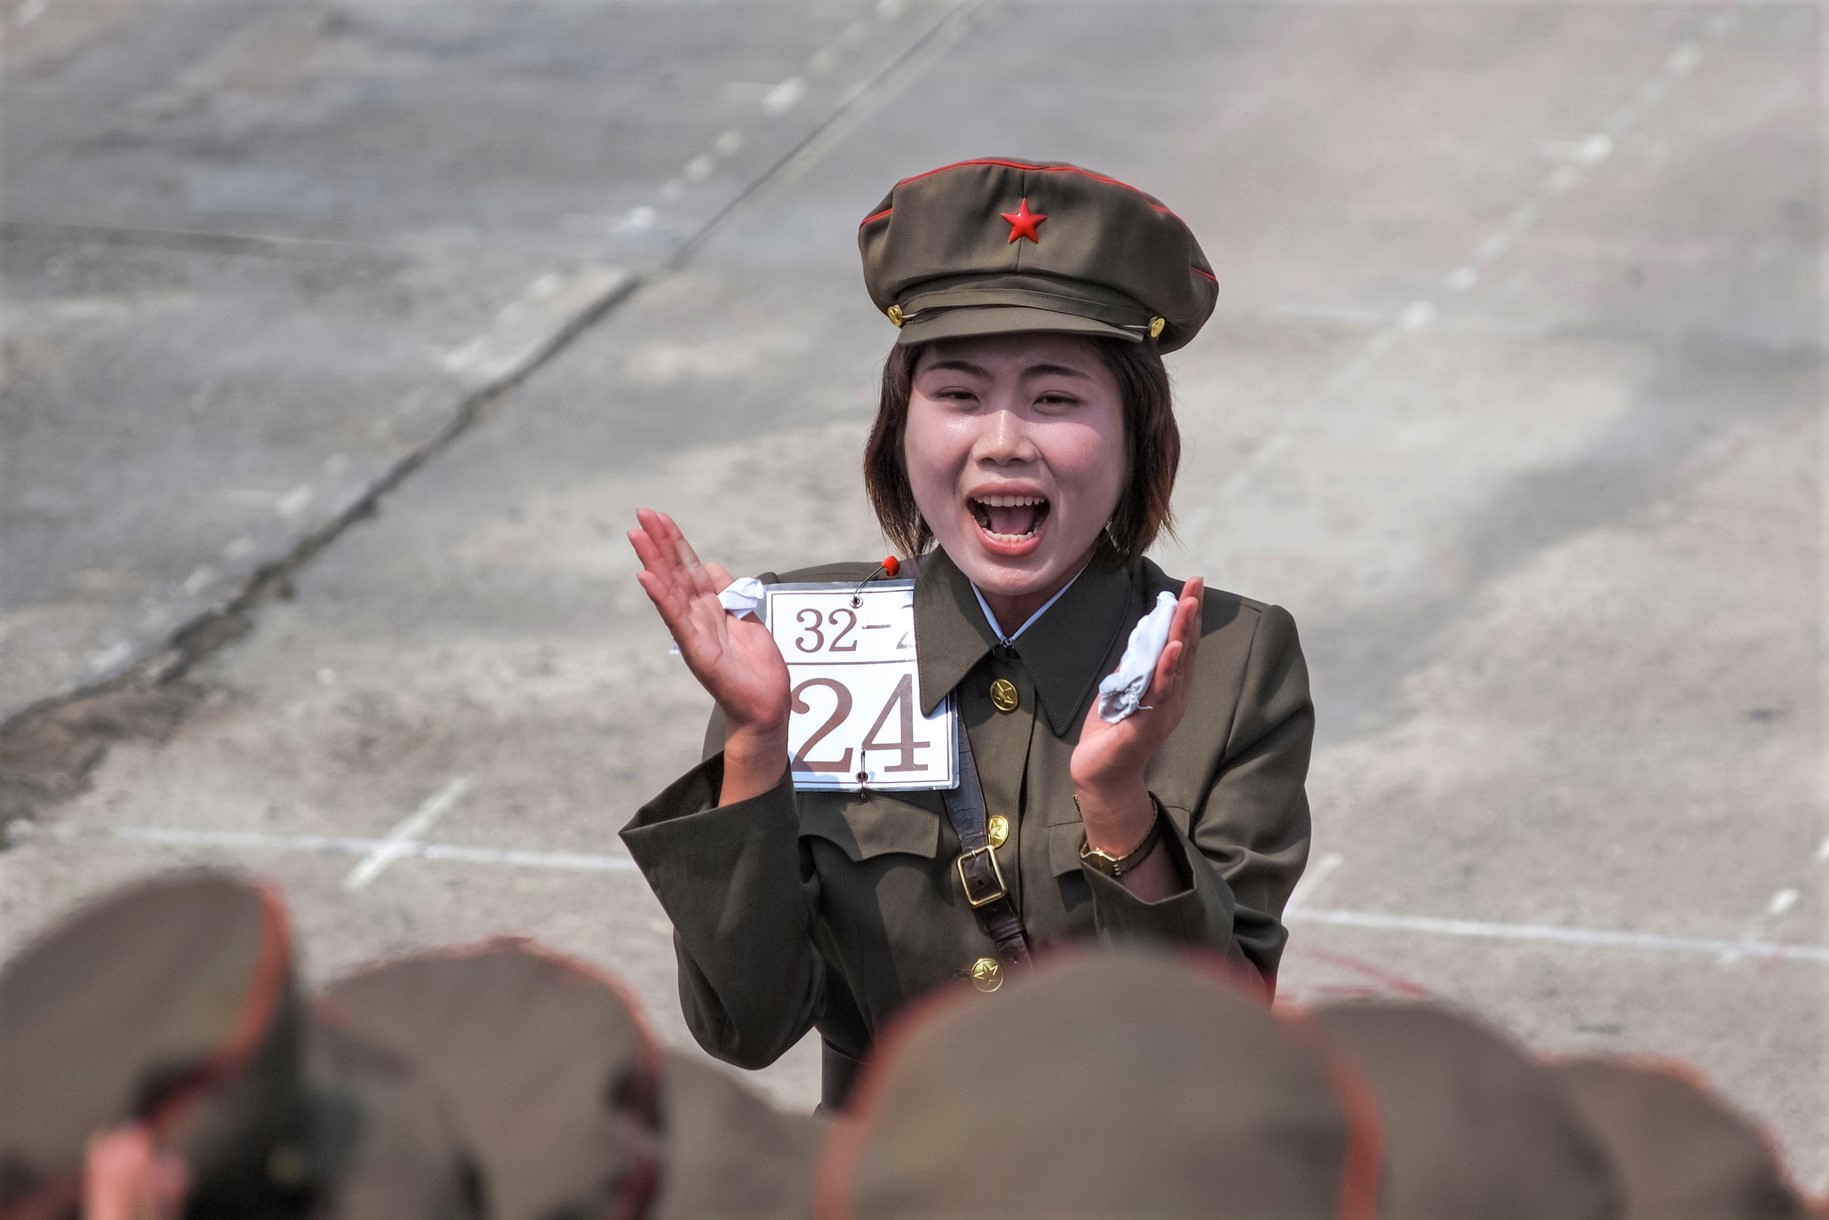 كوريا الشمالية تنوي دخول عالم الكريبتو